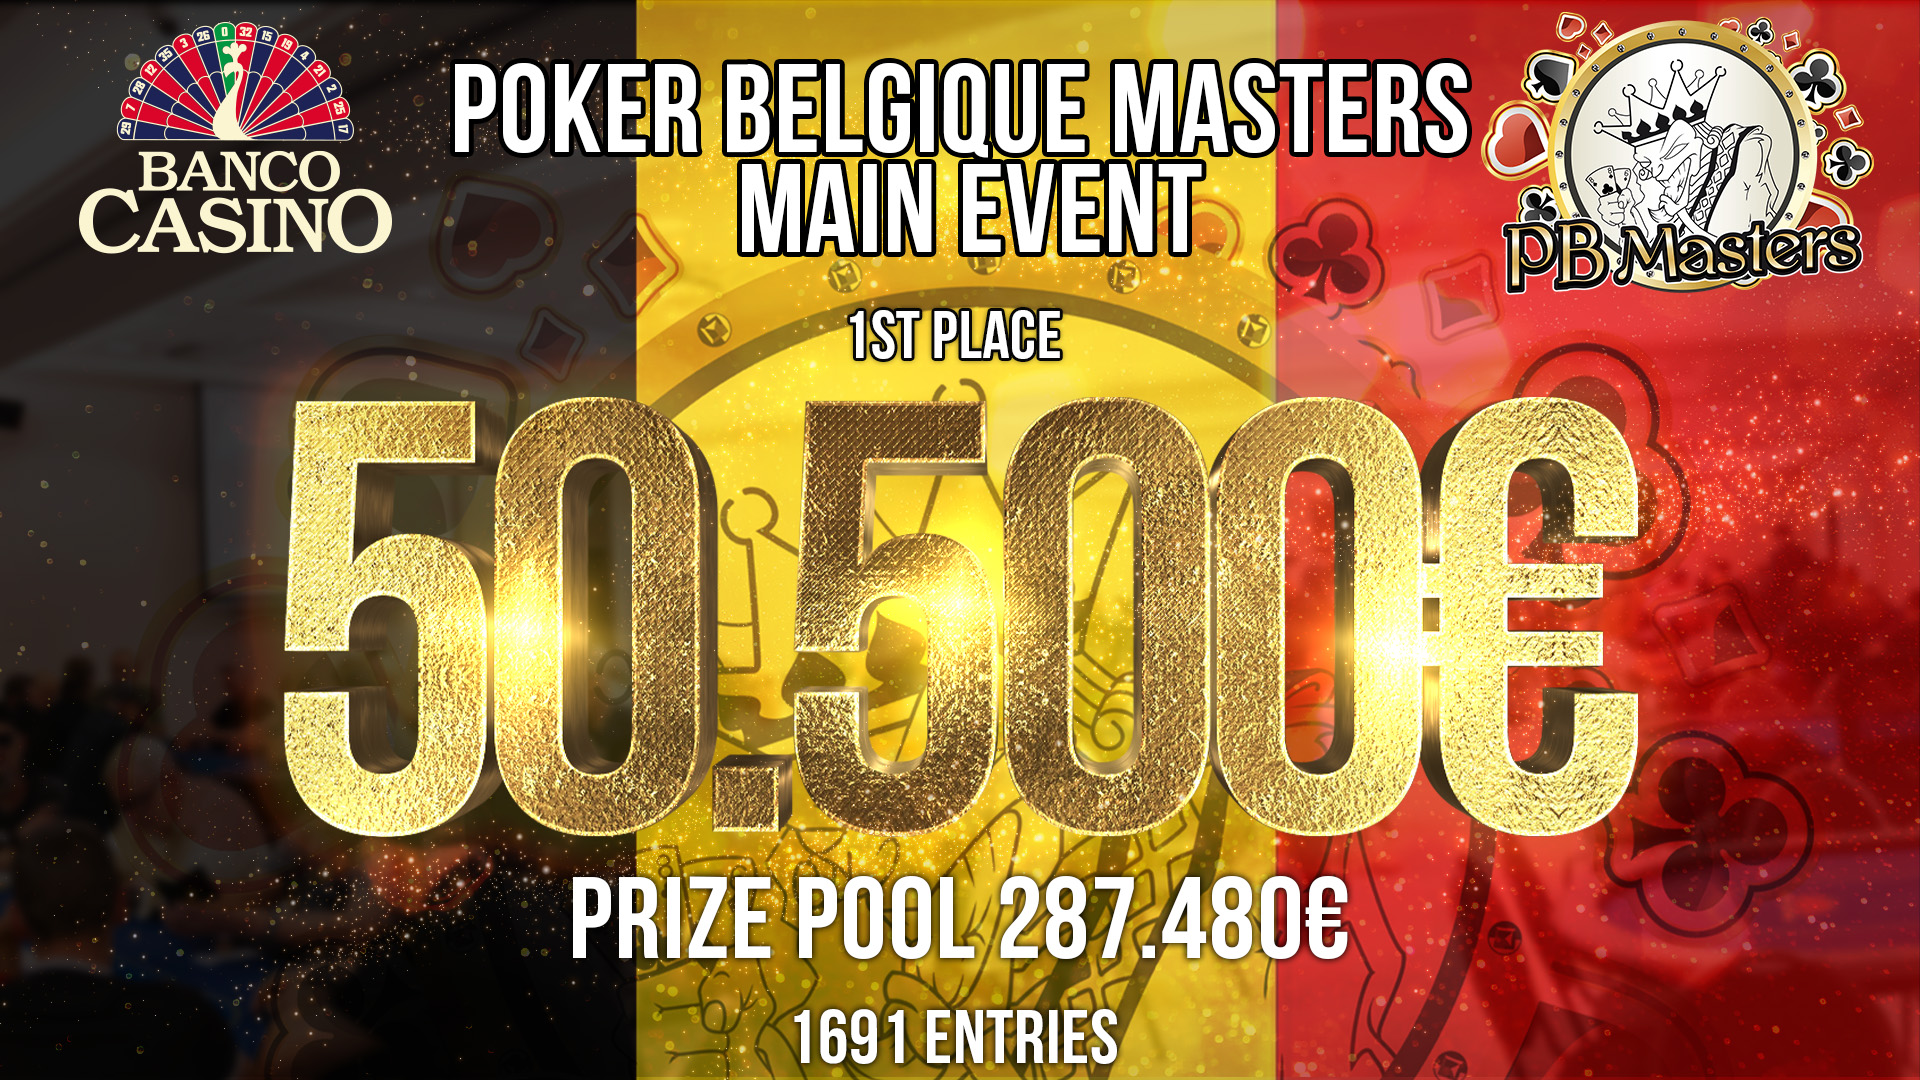 Poker Belgique Masters mit 1.691 Entries - Gesamtpreispool € 287.470 und € 50.500 warten auf den Champion!